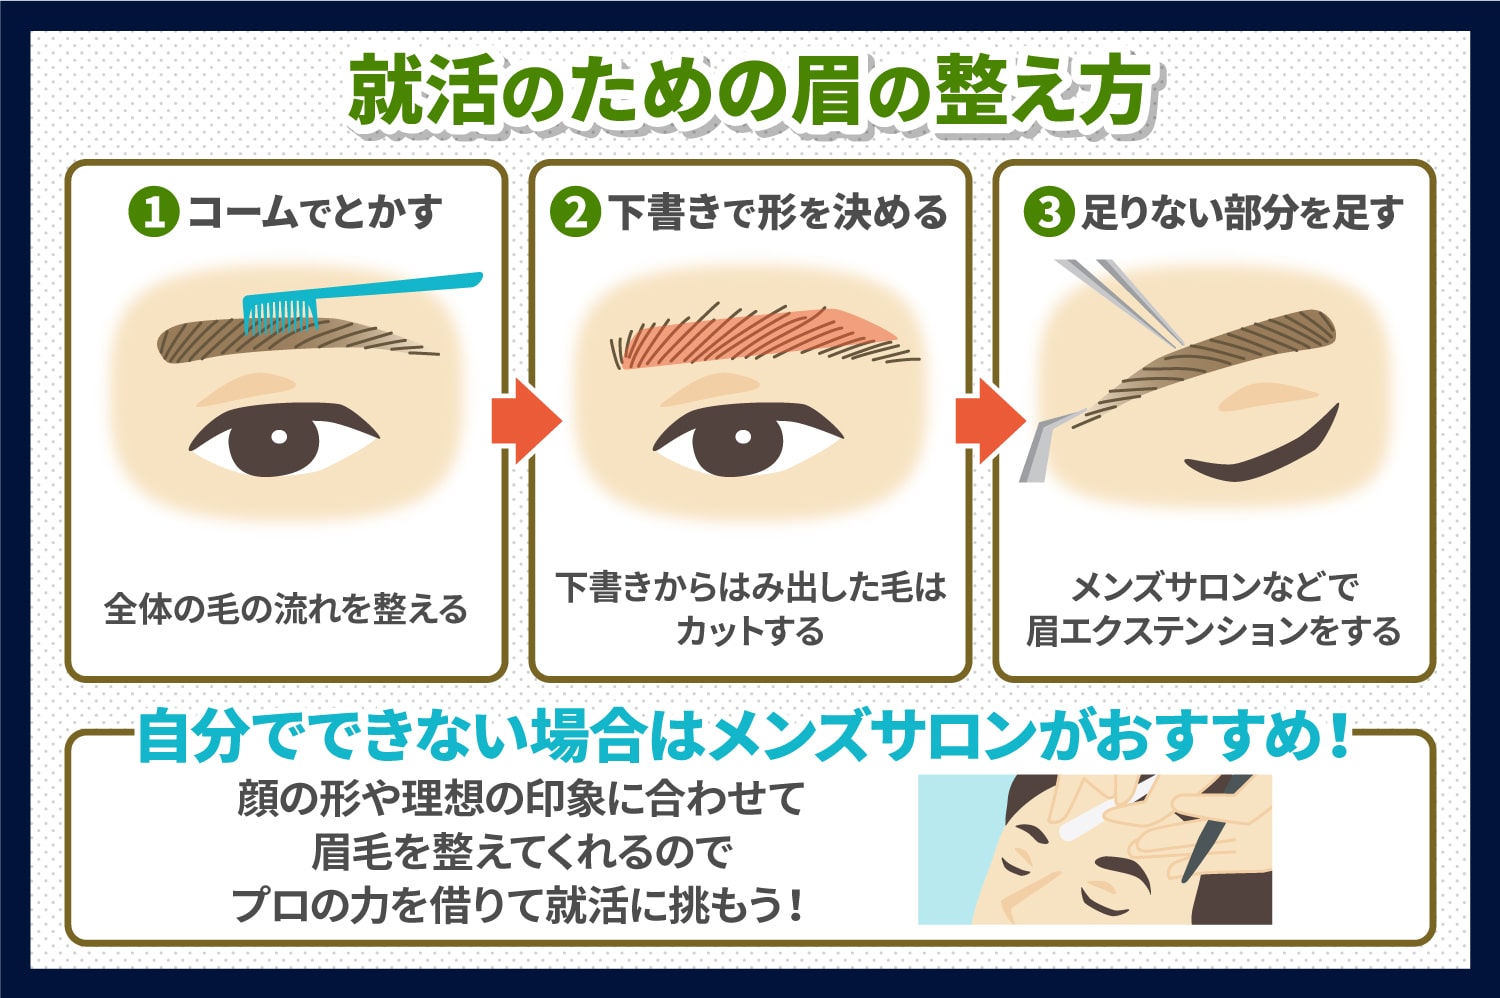 メンズ 就活の時に好印象を与える眉毛とは 新宿 銀座 池袋 横浜 メンズ 眉毛専門サロン プラスエイト